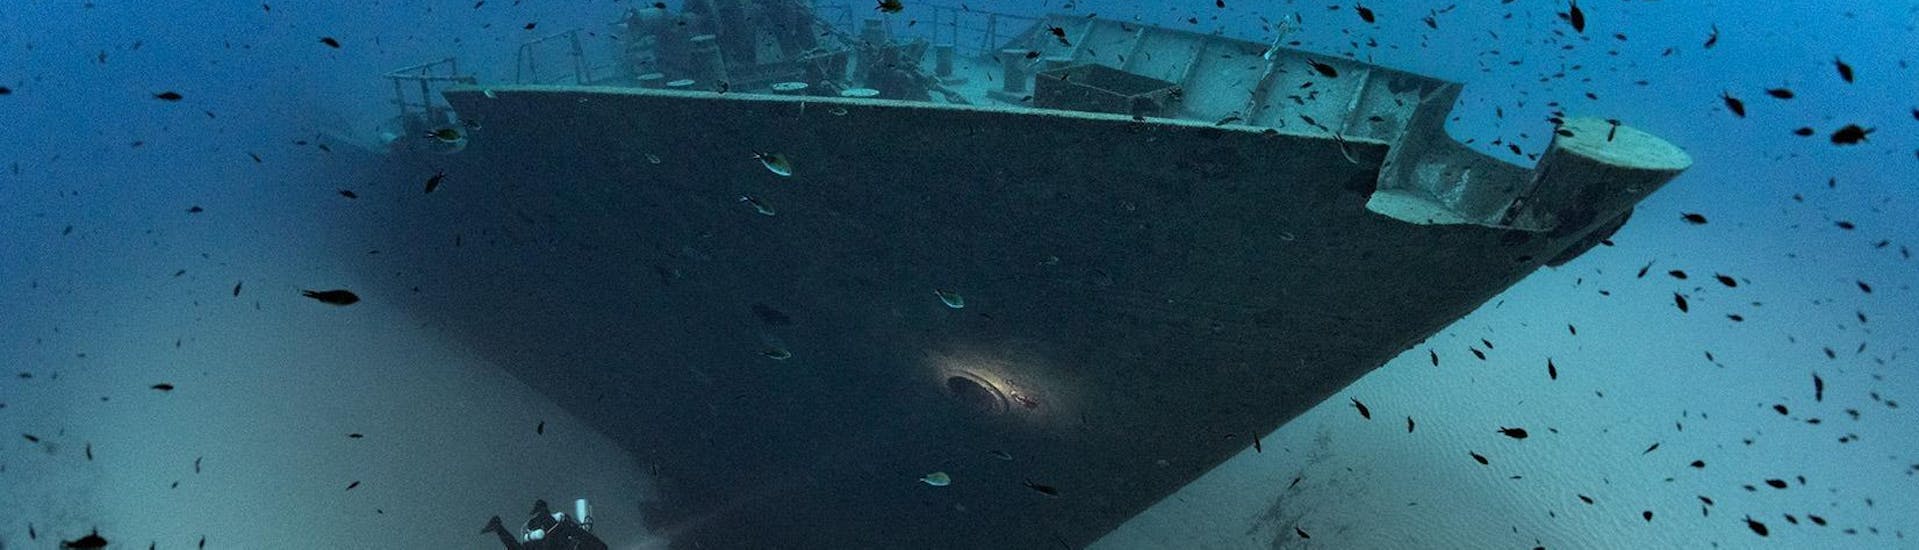 Un Sub esplora un relitto durante le immersioni guidate ai relitti di Malta per subacquei certificati con DiveWise Malta.